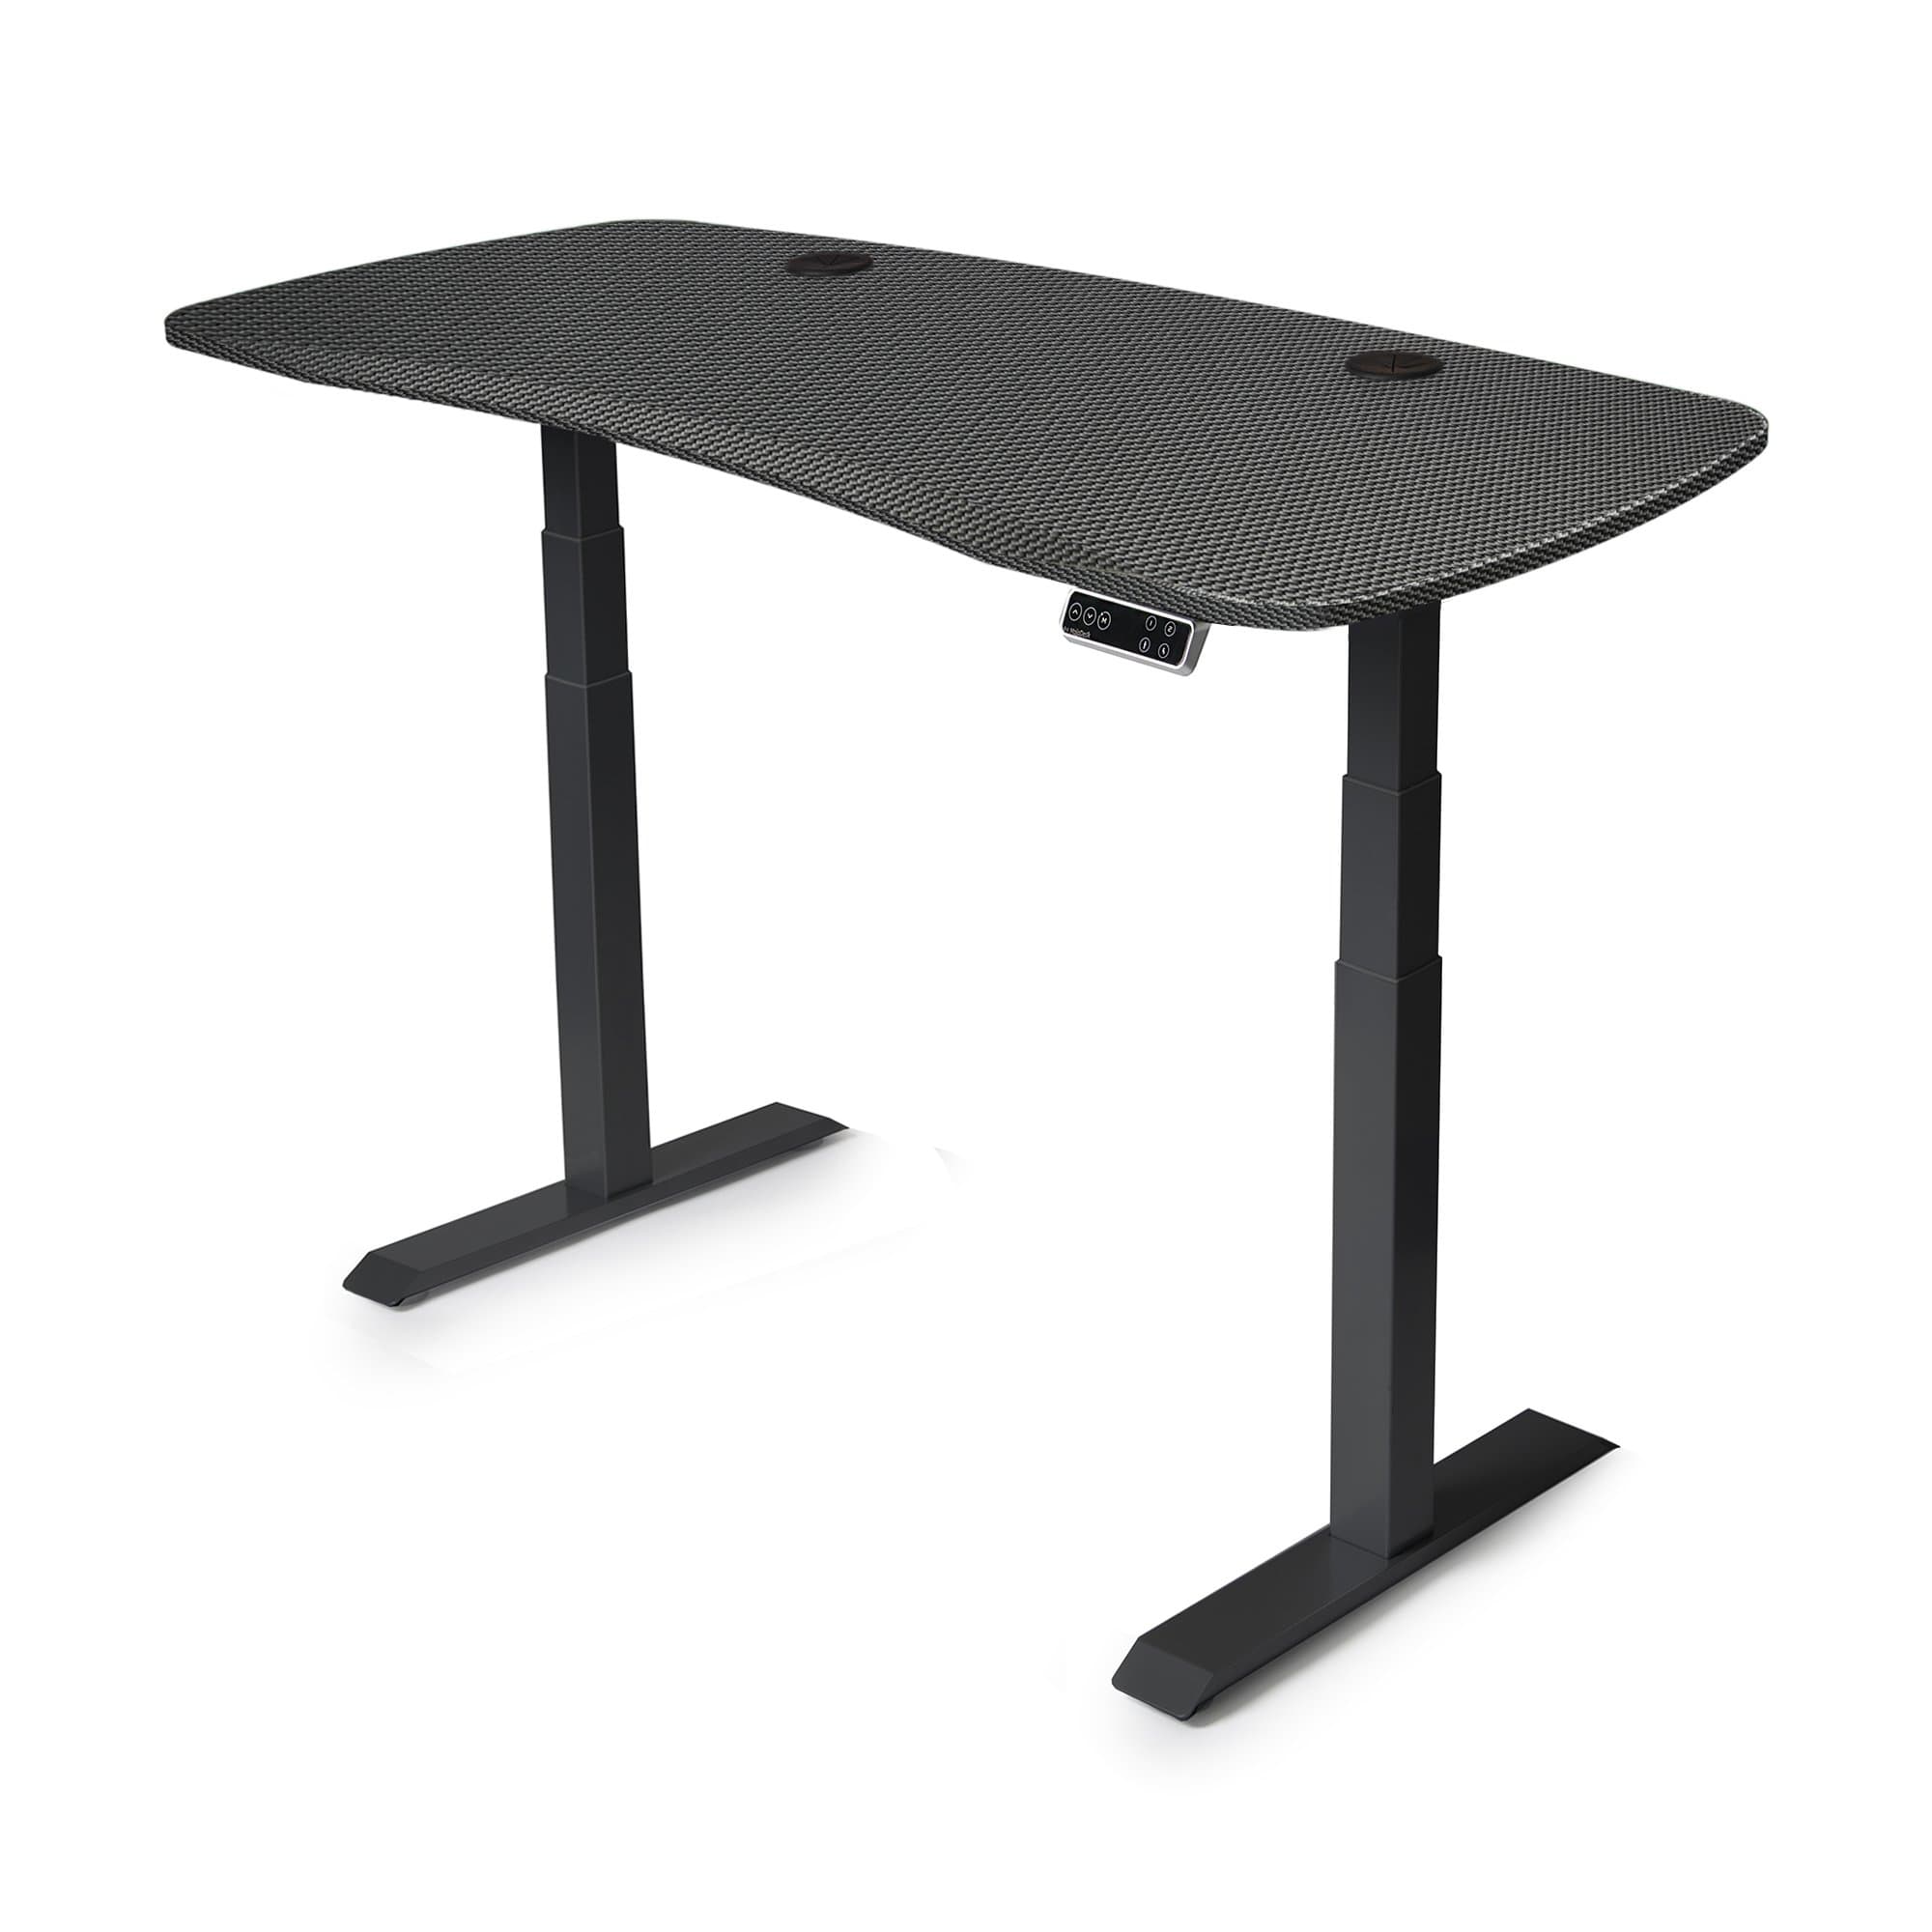 60x30 Electric Height Adjustable Desk - Frame Color: Black - Desktop Color: Carbon Fiber